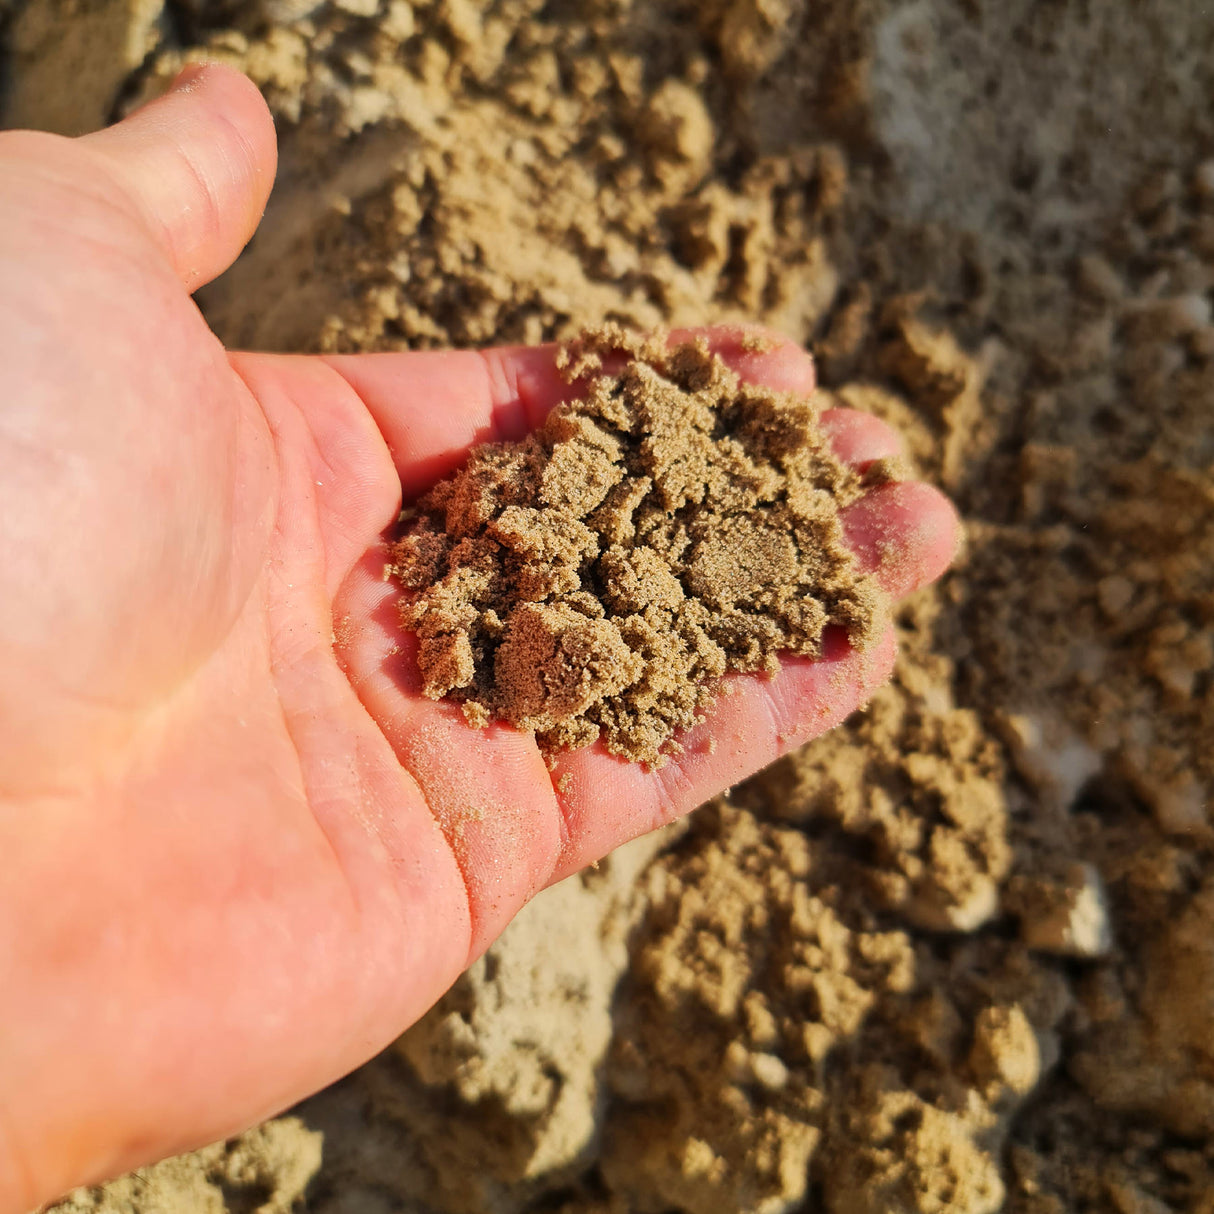 Sand 0-1 mm gewaschen